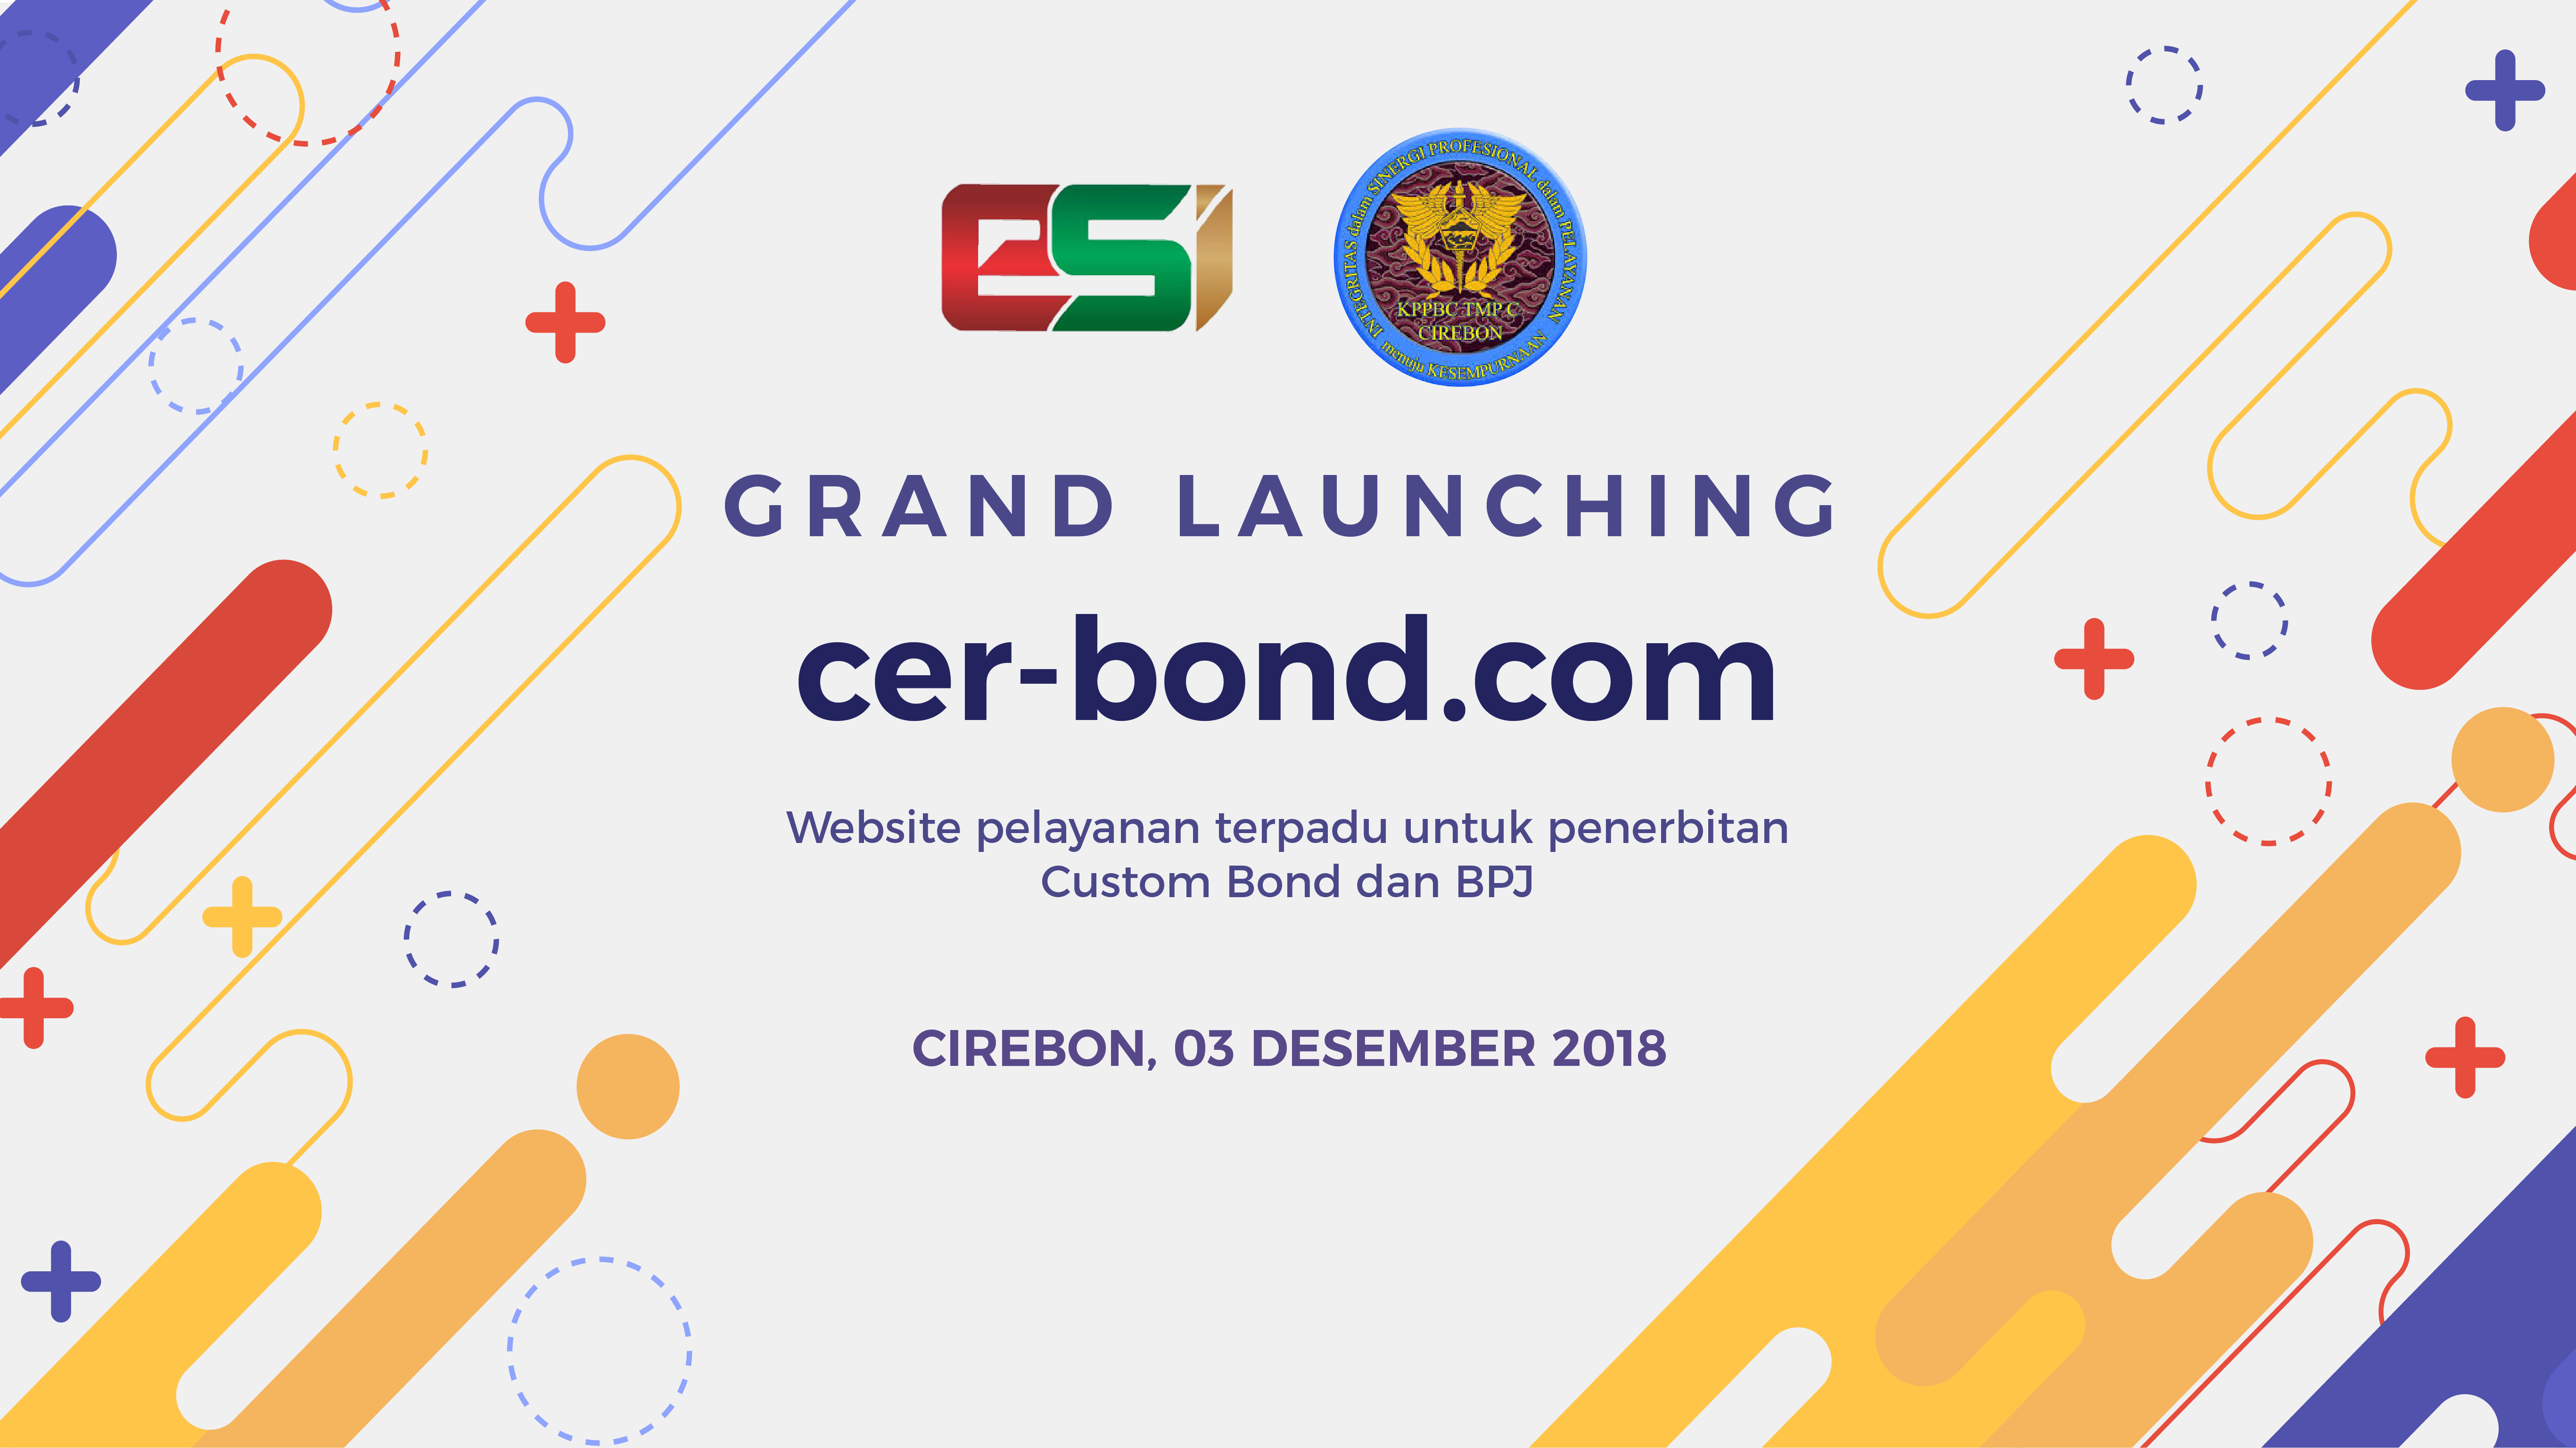 Event Penerapan aplikasi cer-bond dengan Bea Cukai Cirebon